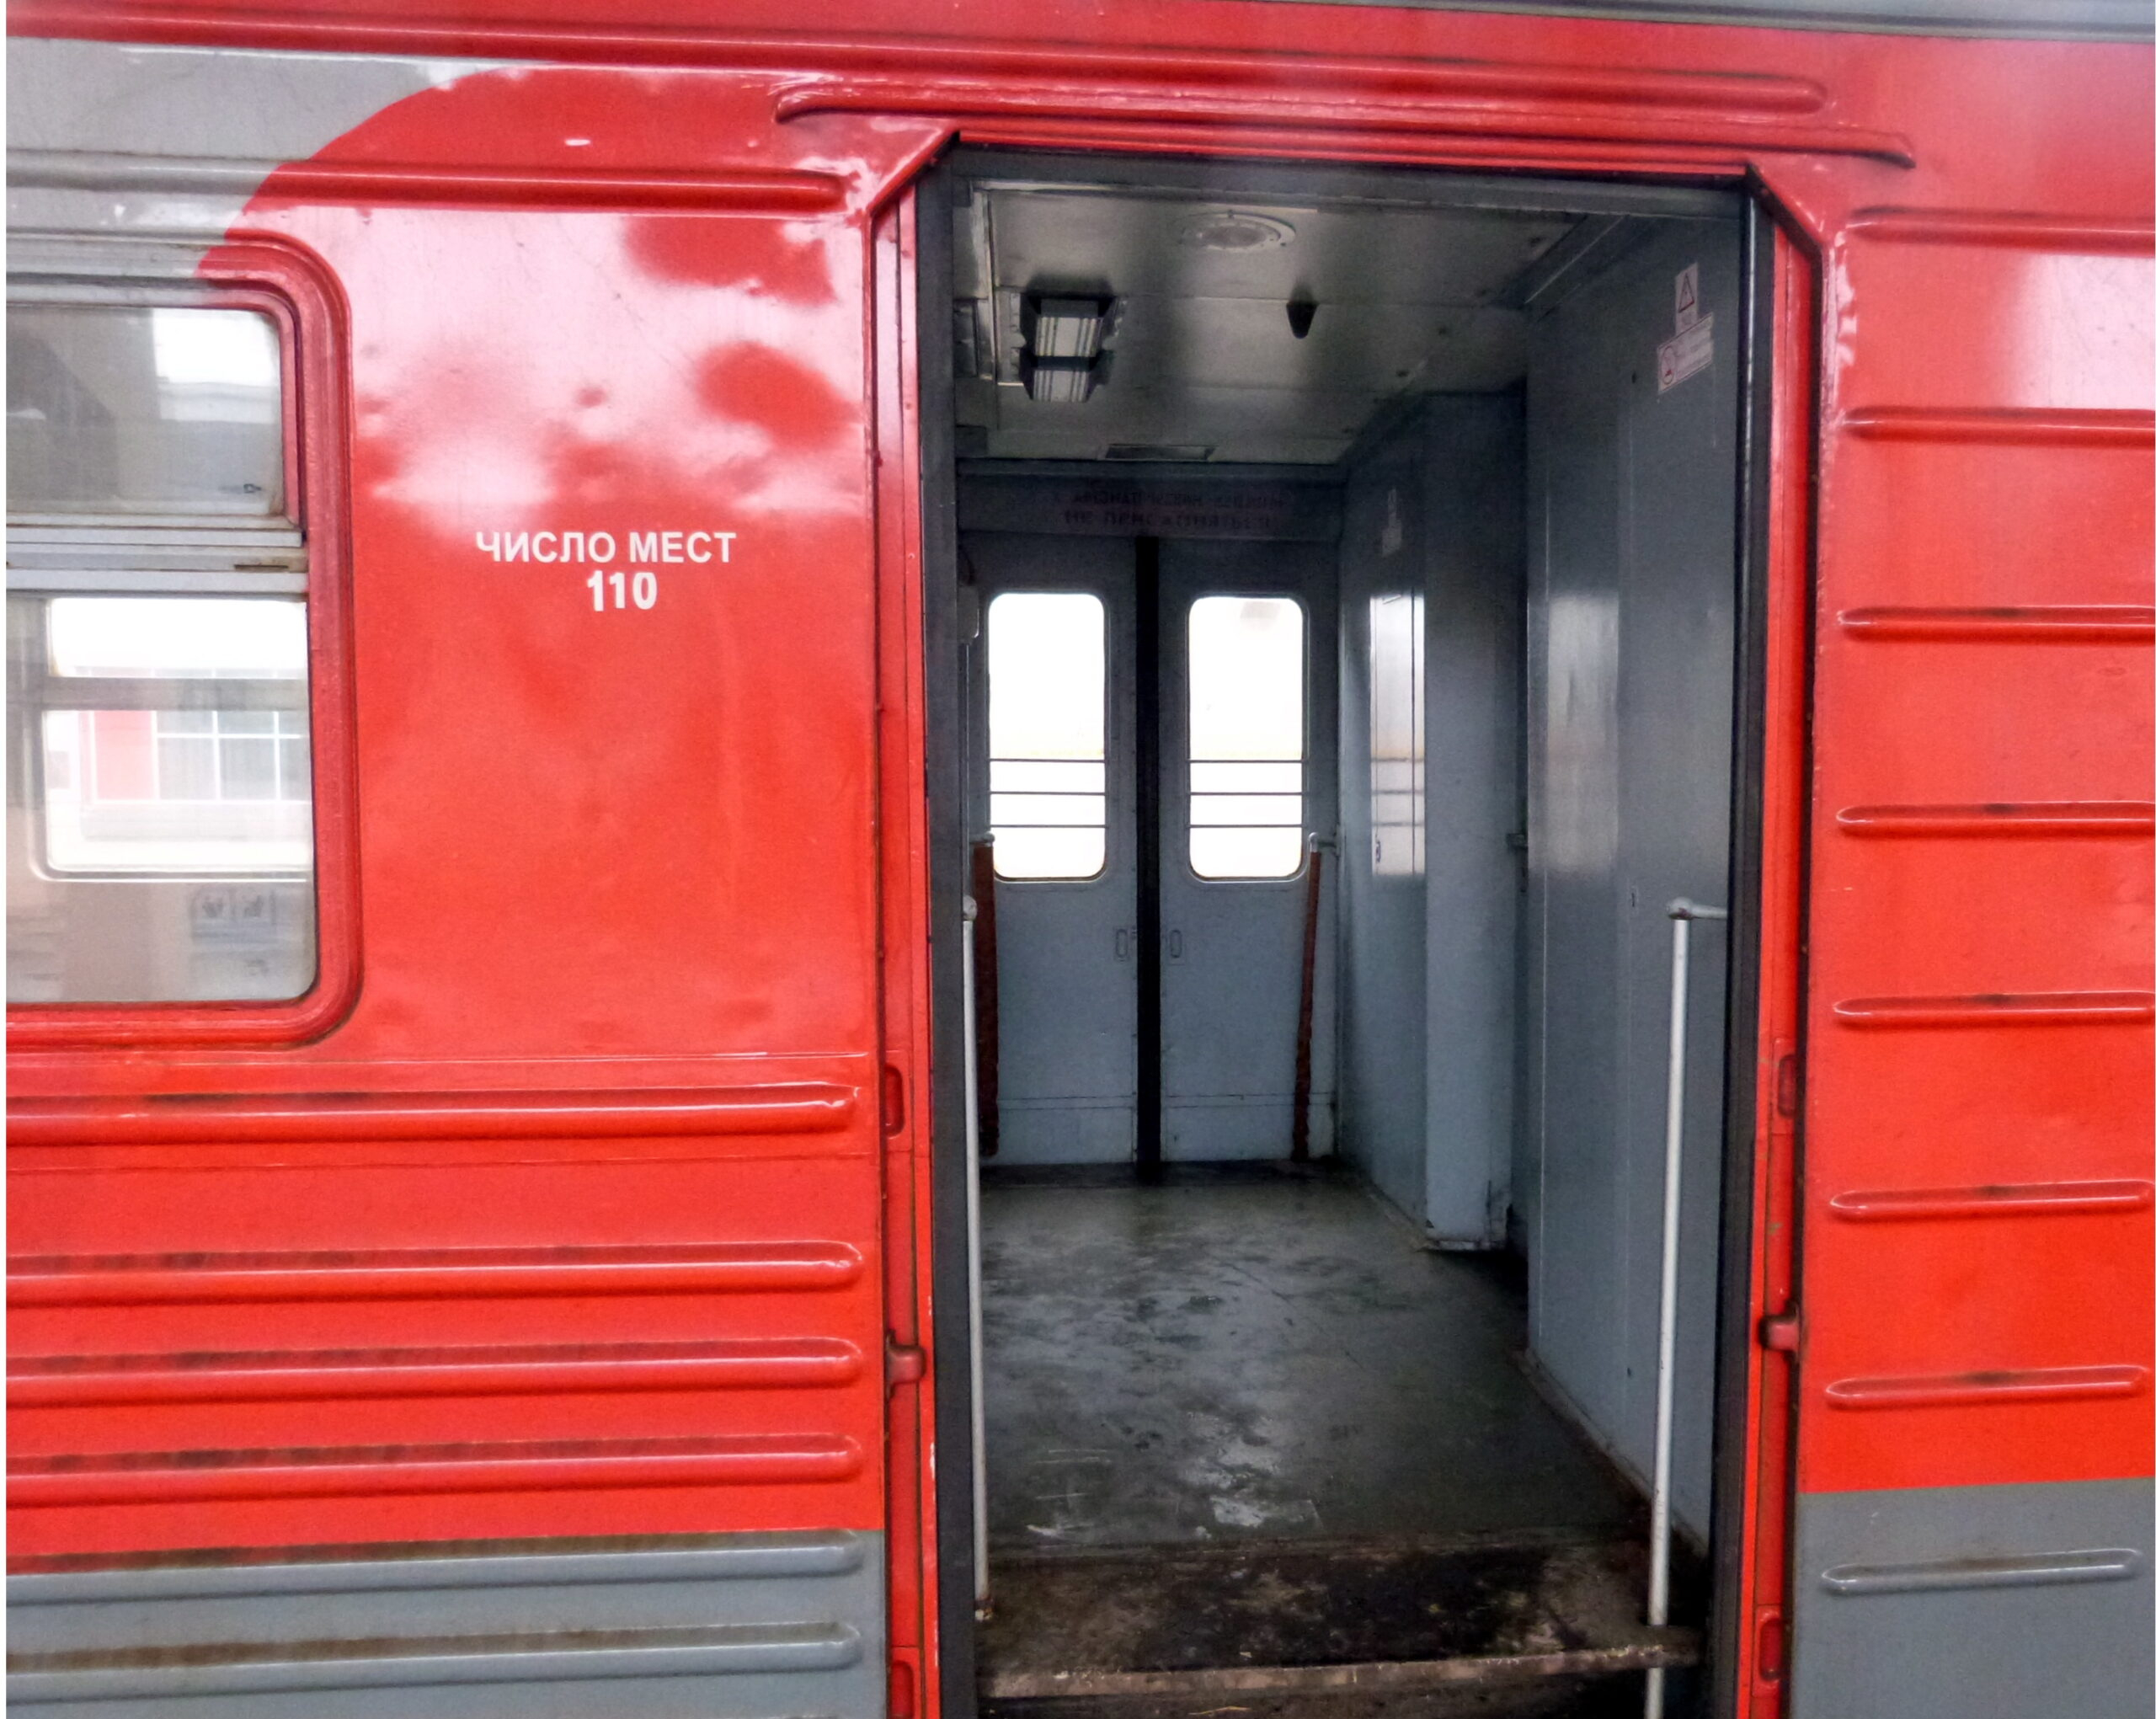 Московская детская железная дорога открывает 85-й сезон движения